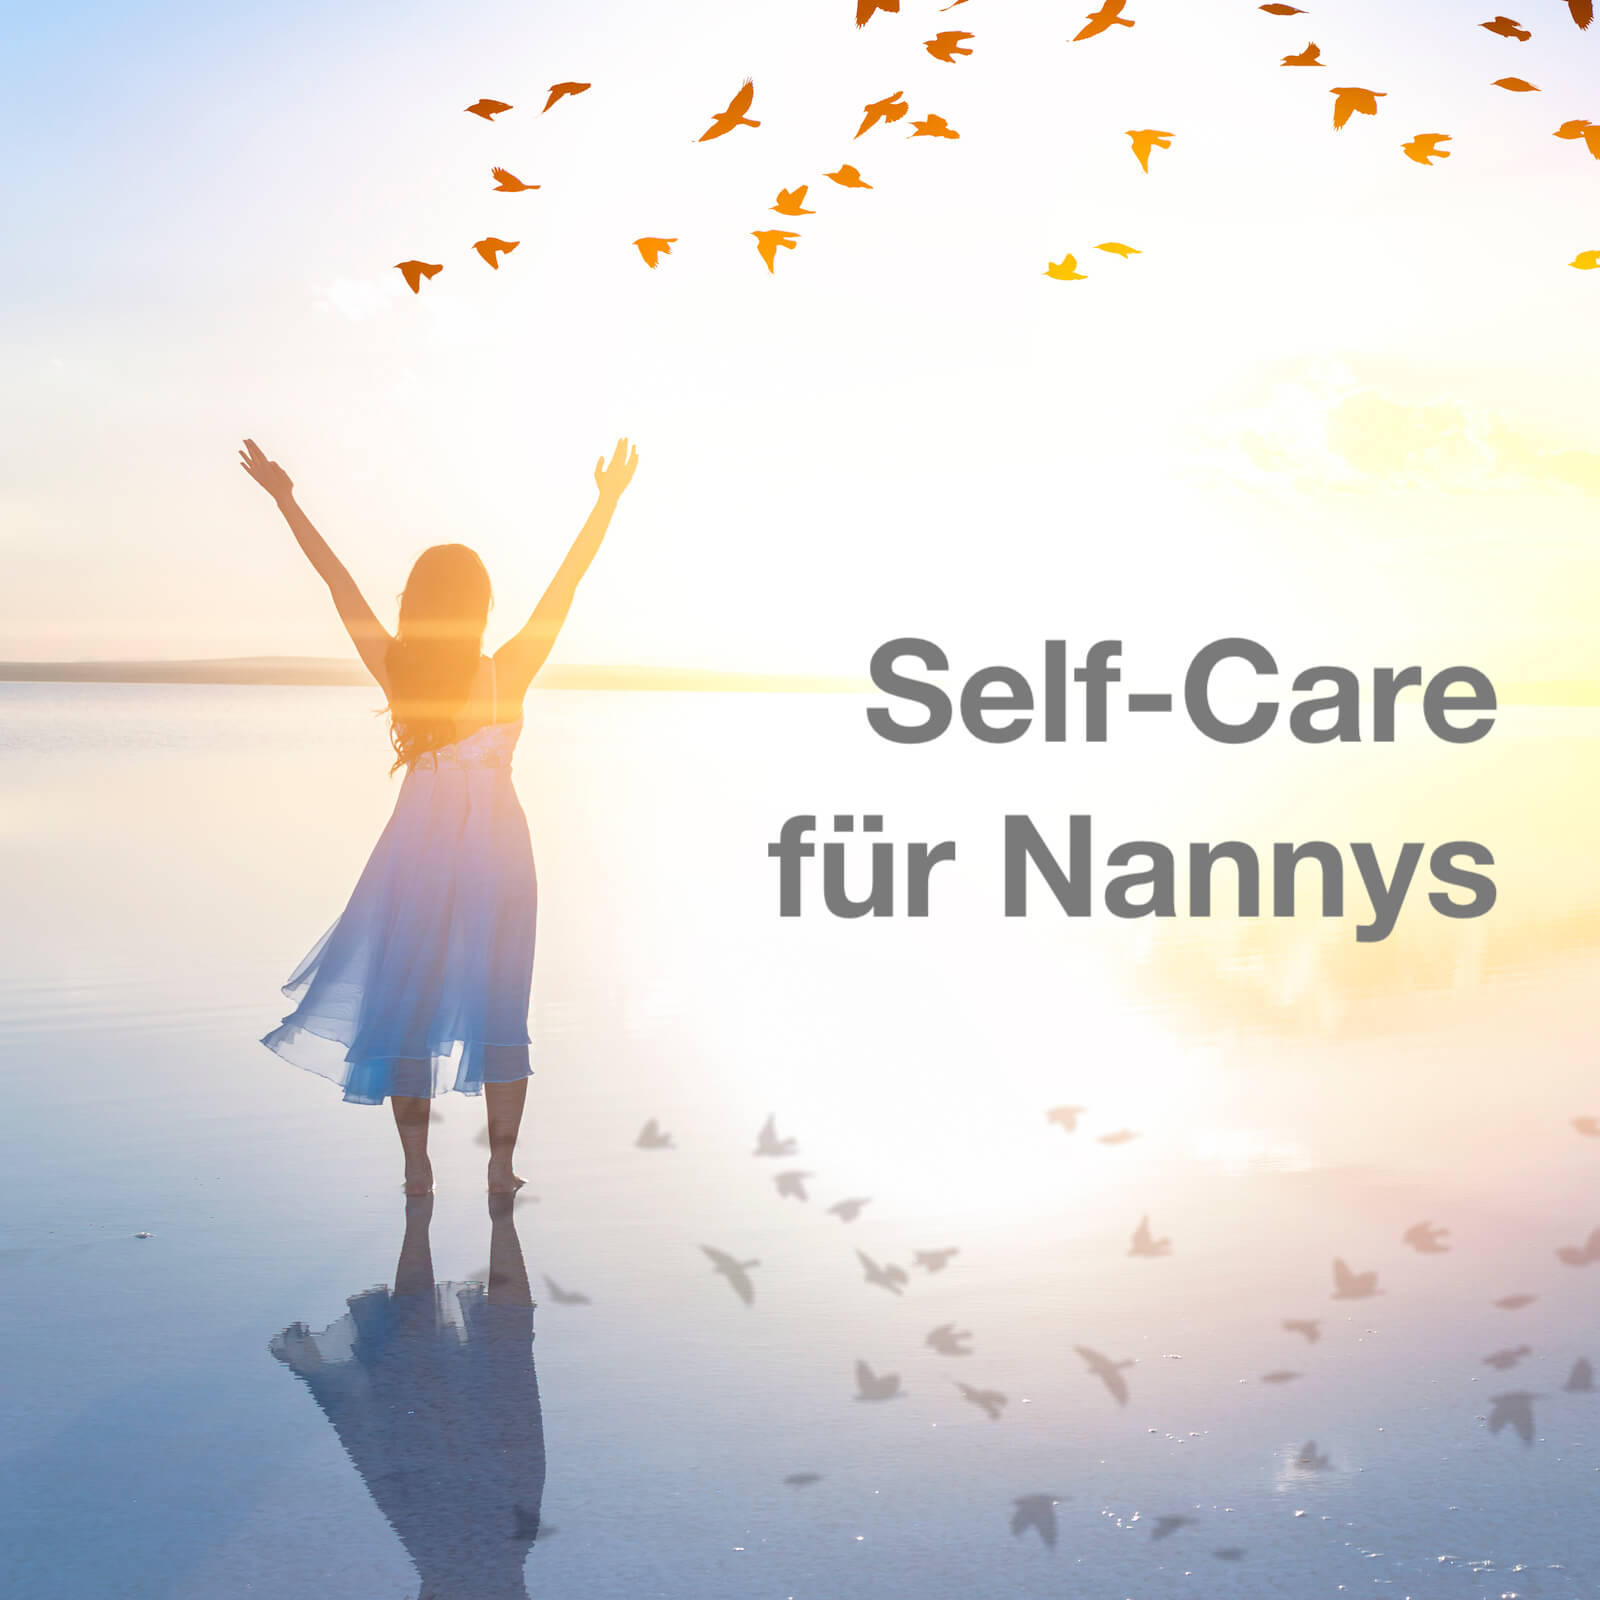 Selfcare für Nannys – mehr als nur Wellness